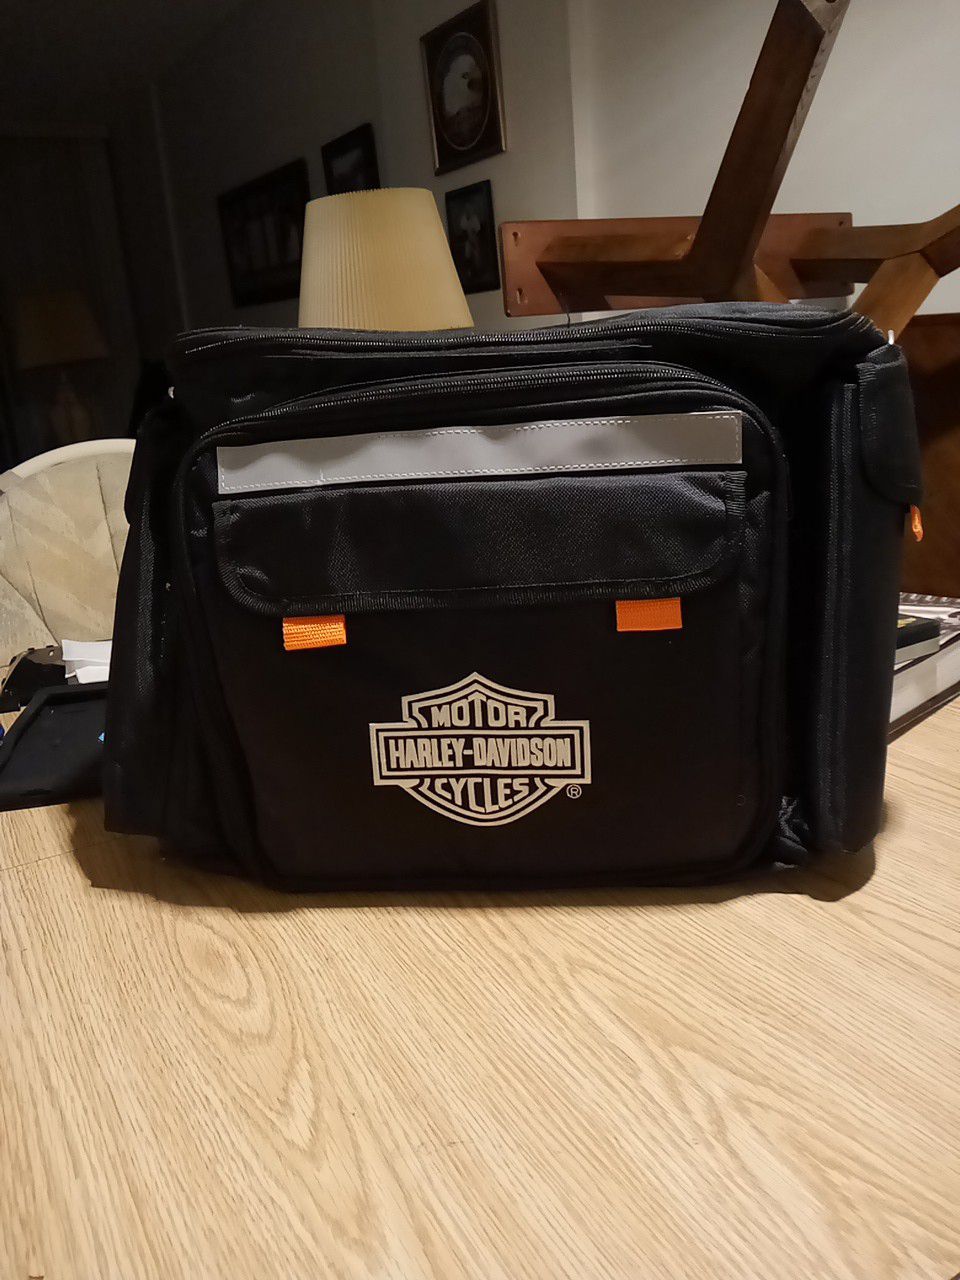 Harley-Davidson portable cooler bag new